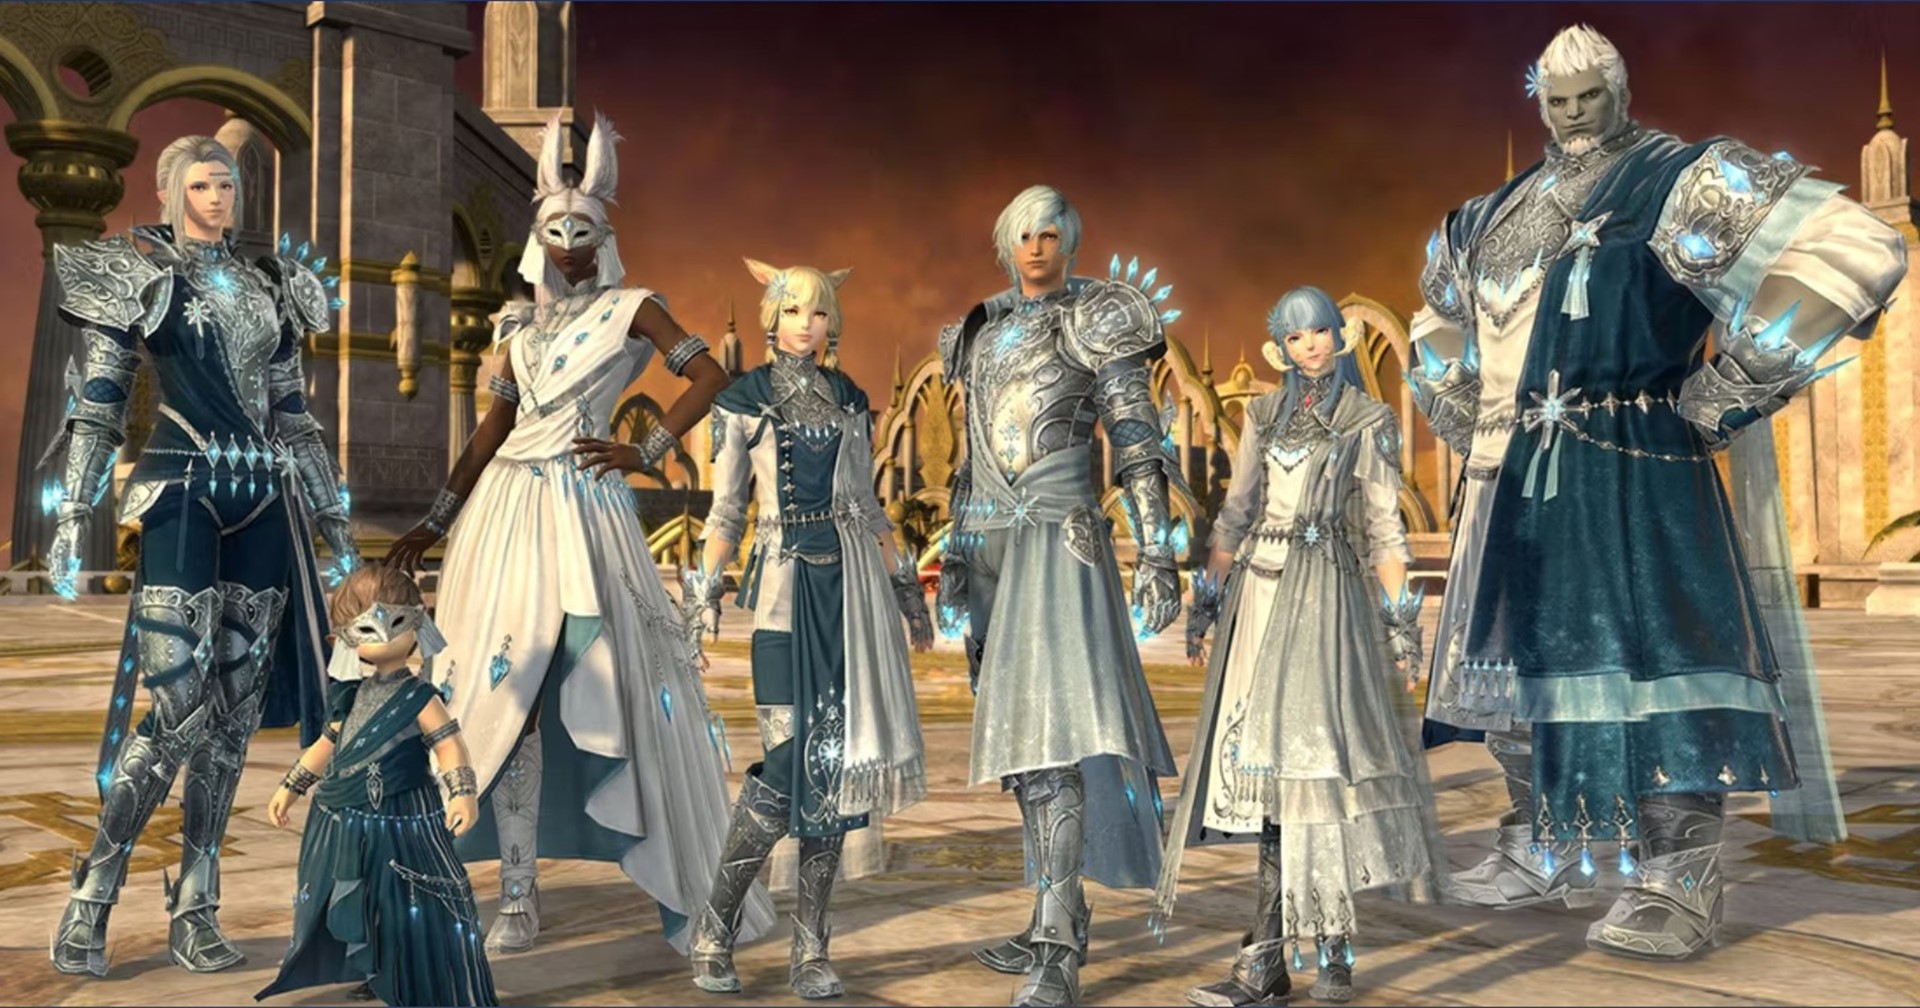 ผู้สร้างอาจพิจารณาลดระดับเลเวล ‘Level Squish’ ในเกม Final Fantasy XIV